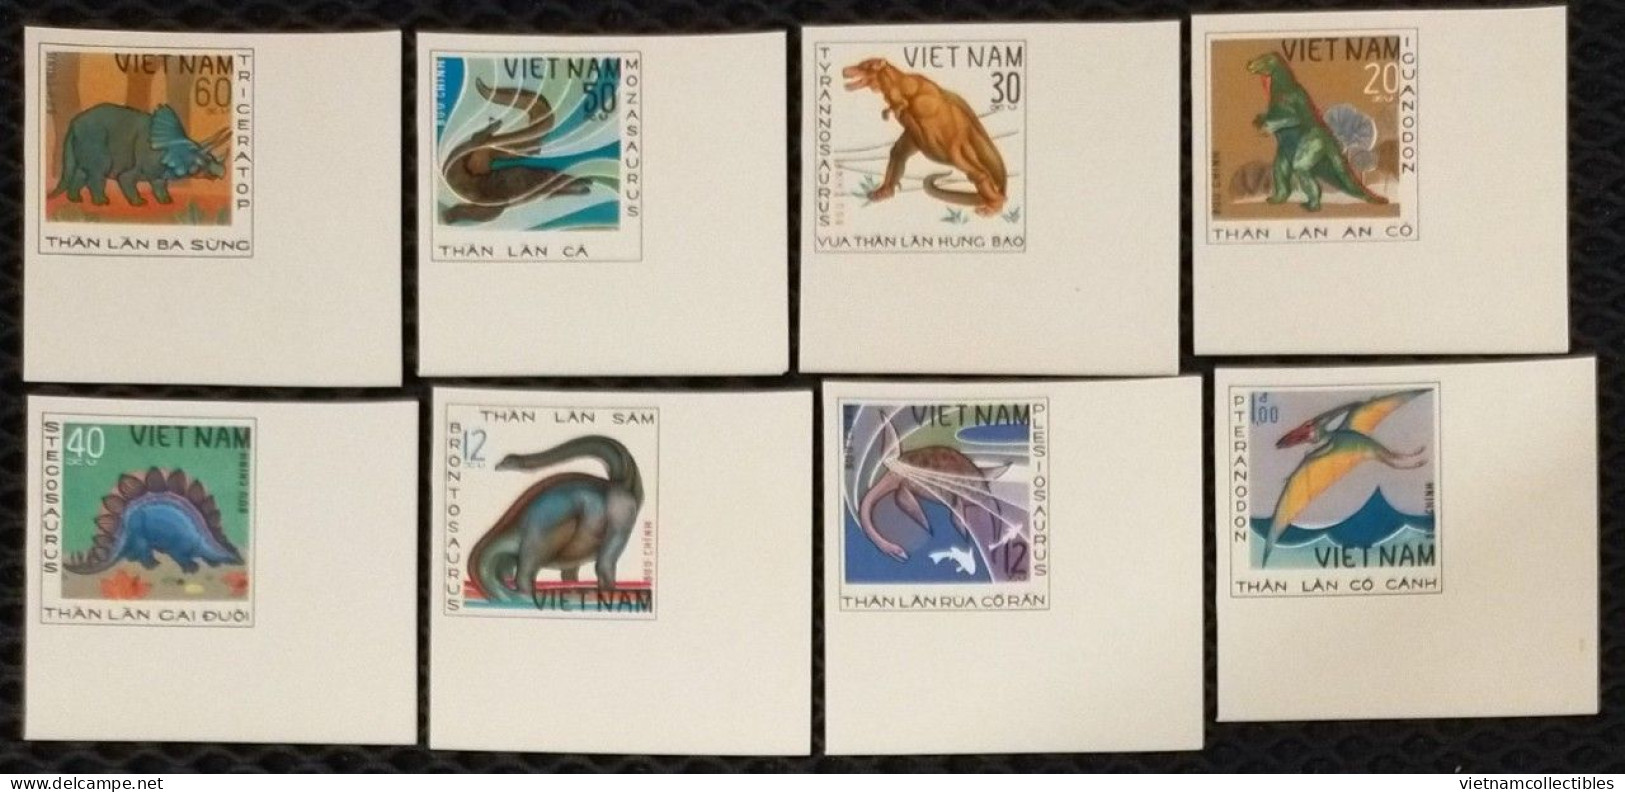 Vietnam Viet Nam MNH Imperf Stamps 1979 : Prehistoric Animals / Fauna / Dinosaur (Ms345) - Vietnam